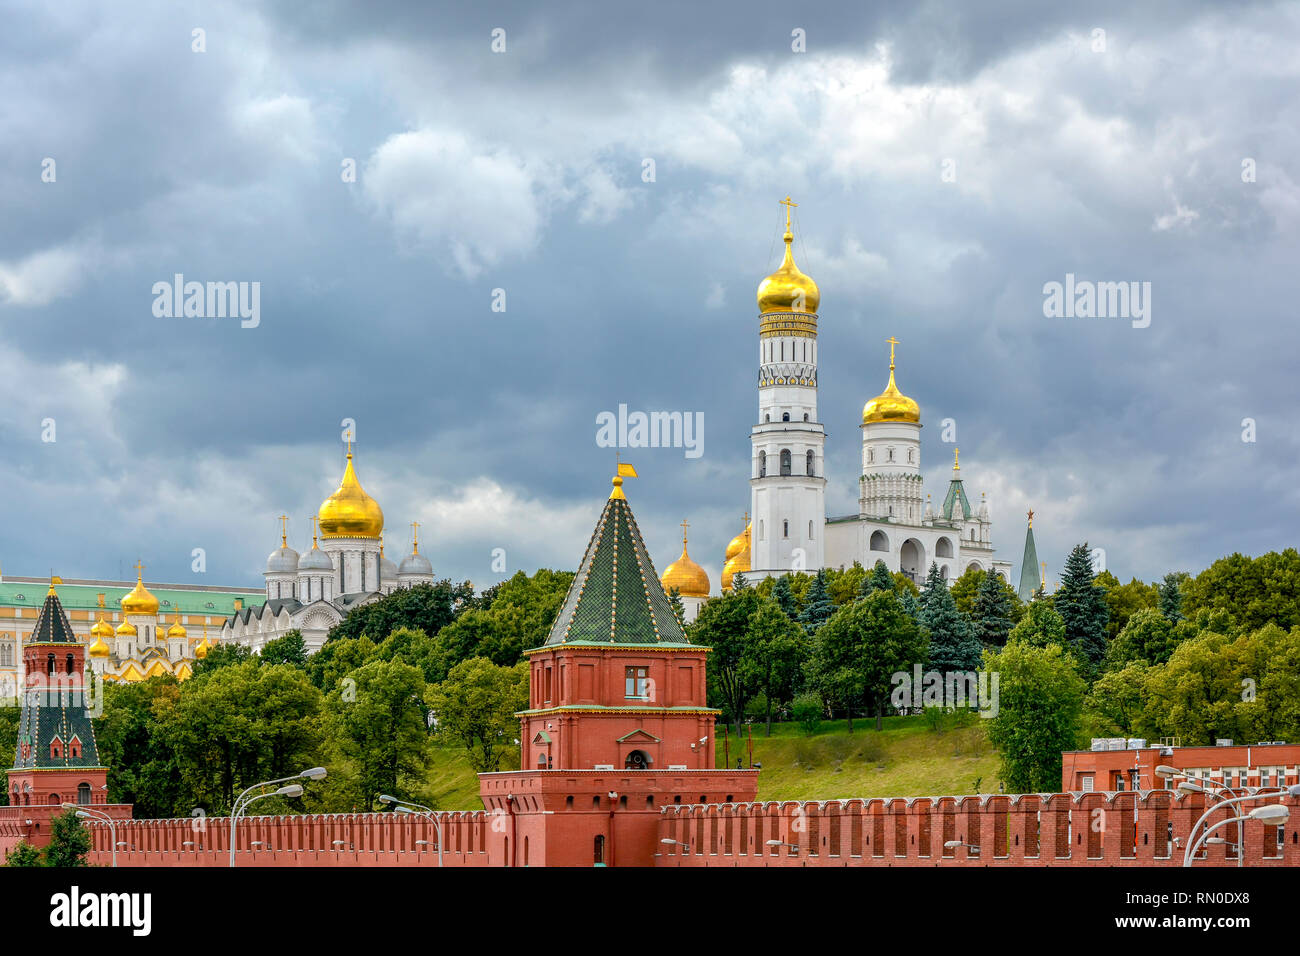 Le pareti e i giardini della Kremelin a Mosca in Russia con le sue chiese e architettura imponente Foto Stock